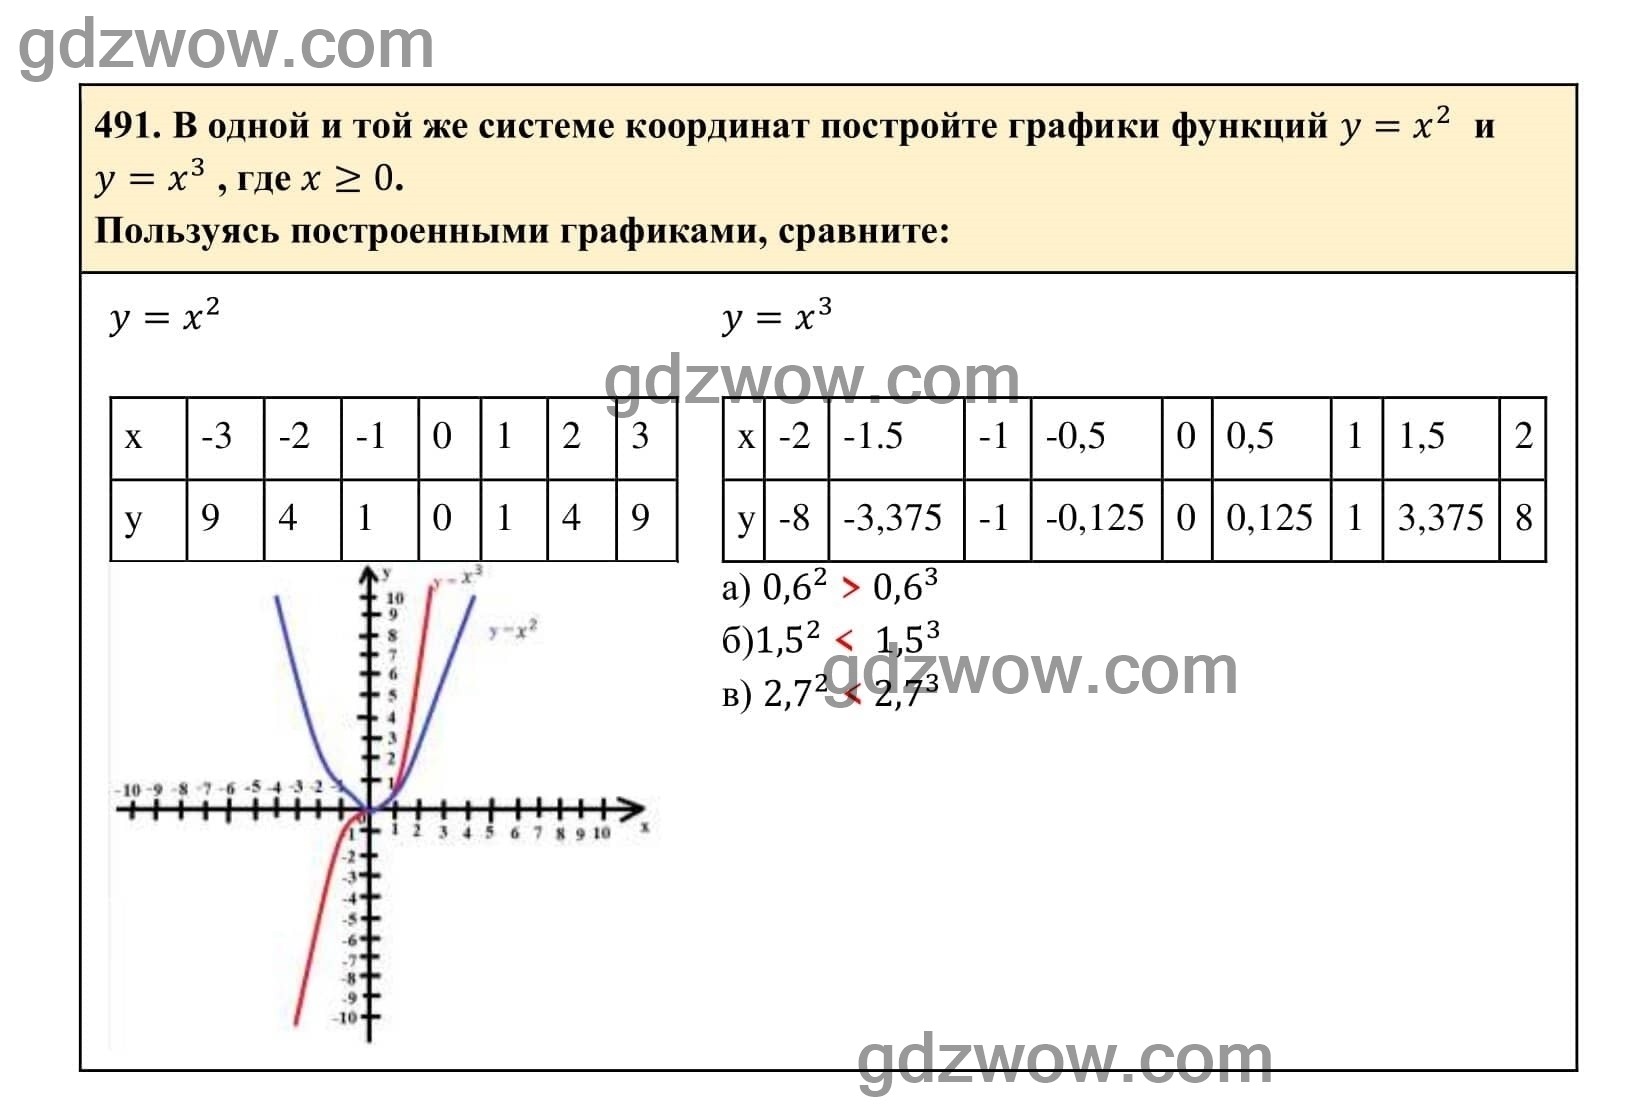 Упражнение 491 - ГДЗ по Алгебре 7 класс Учебник Макарычев (решебник) - GDZwow